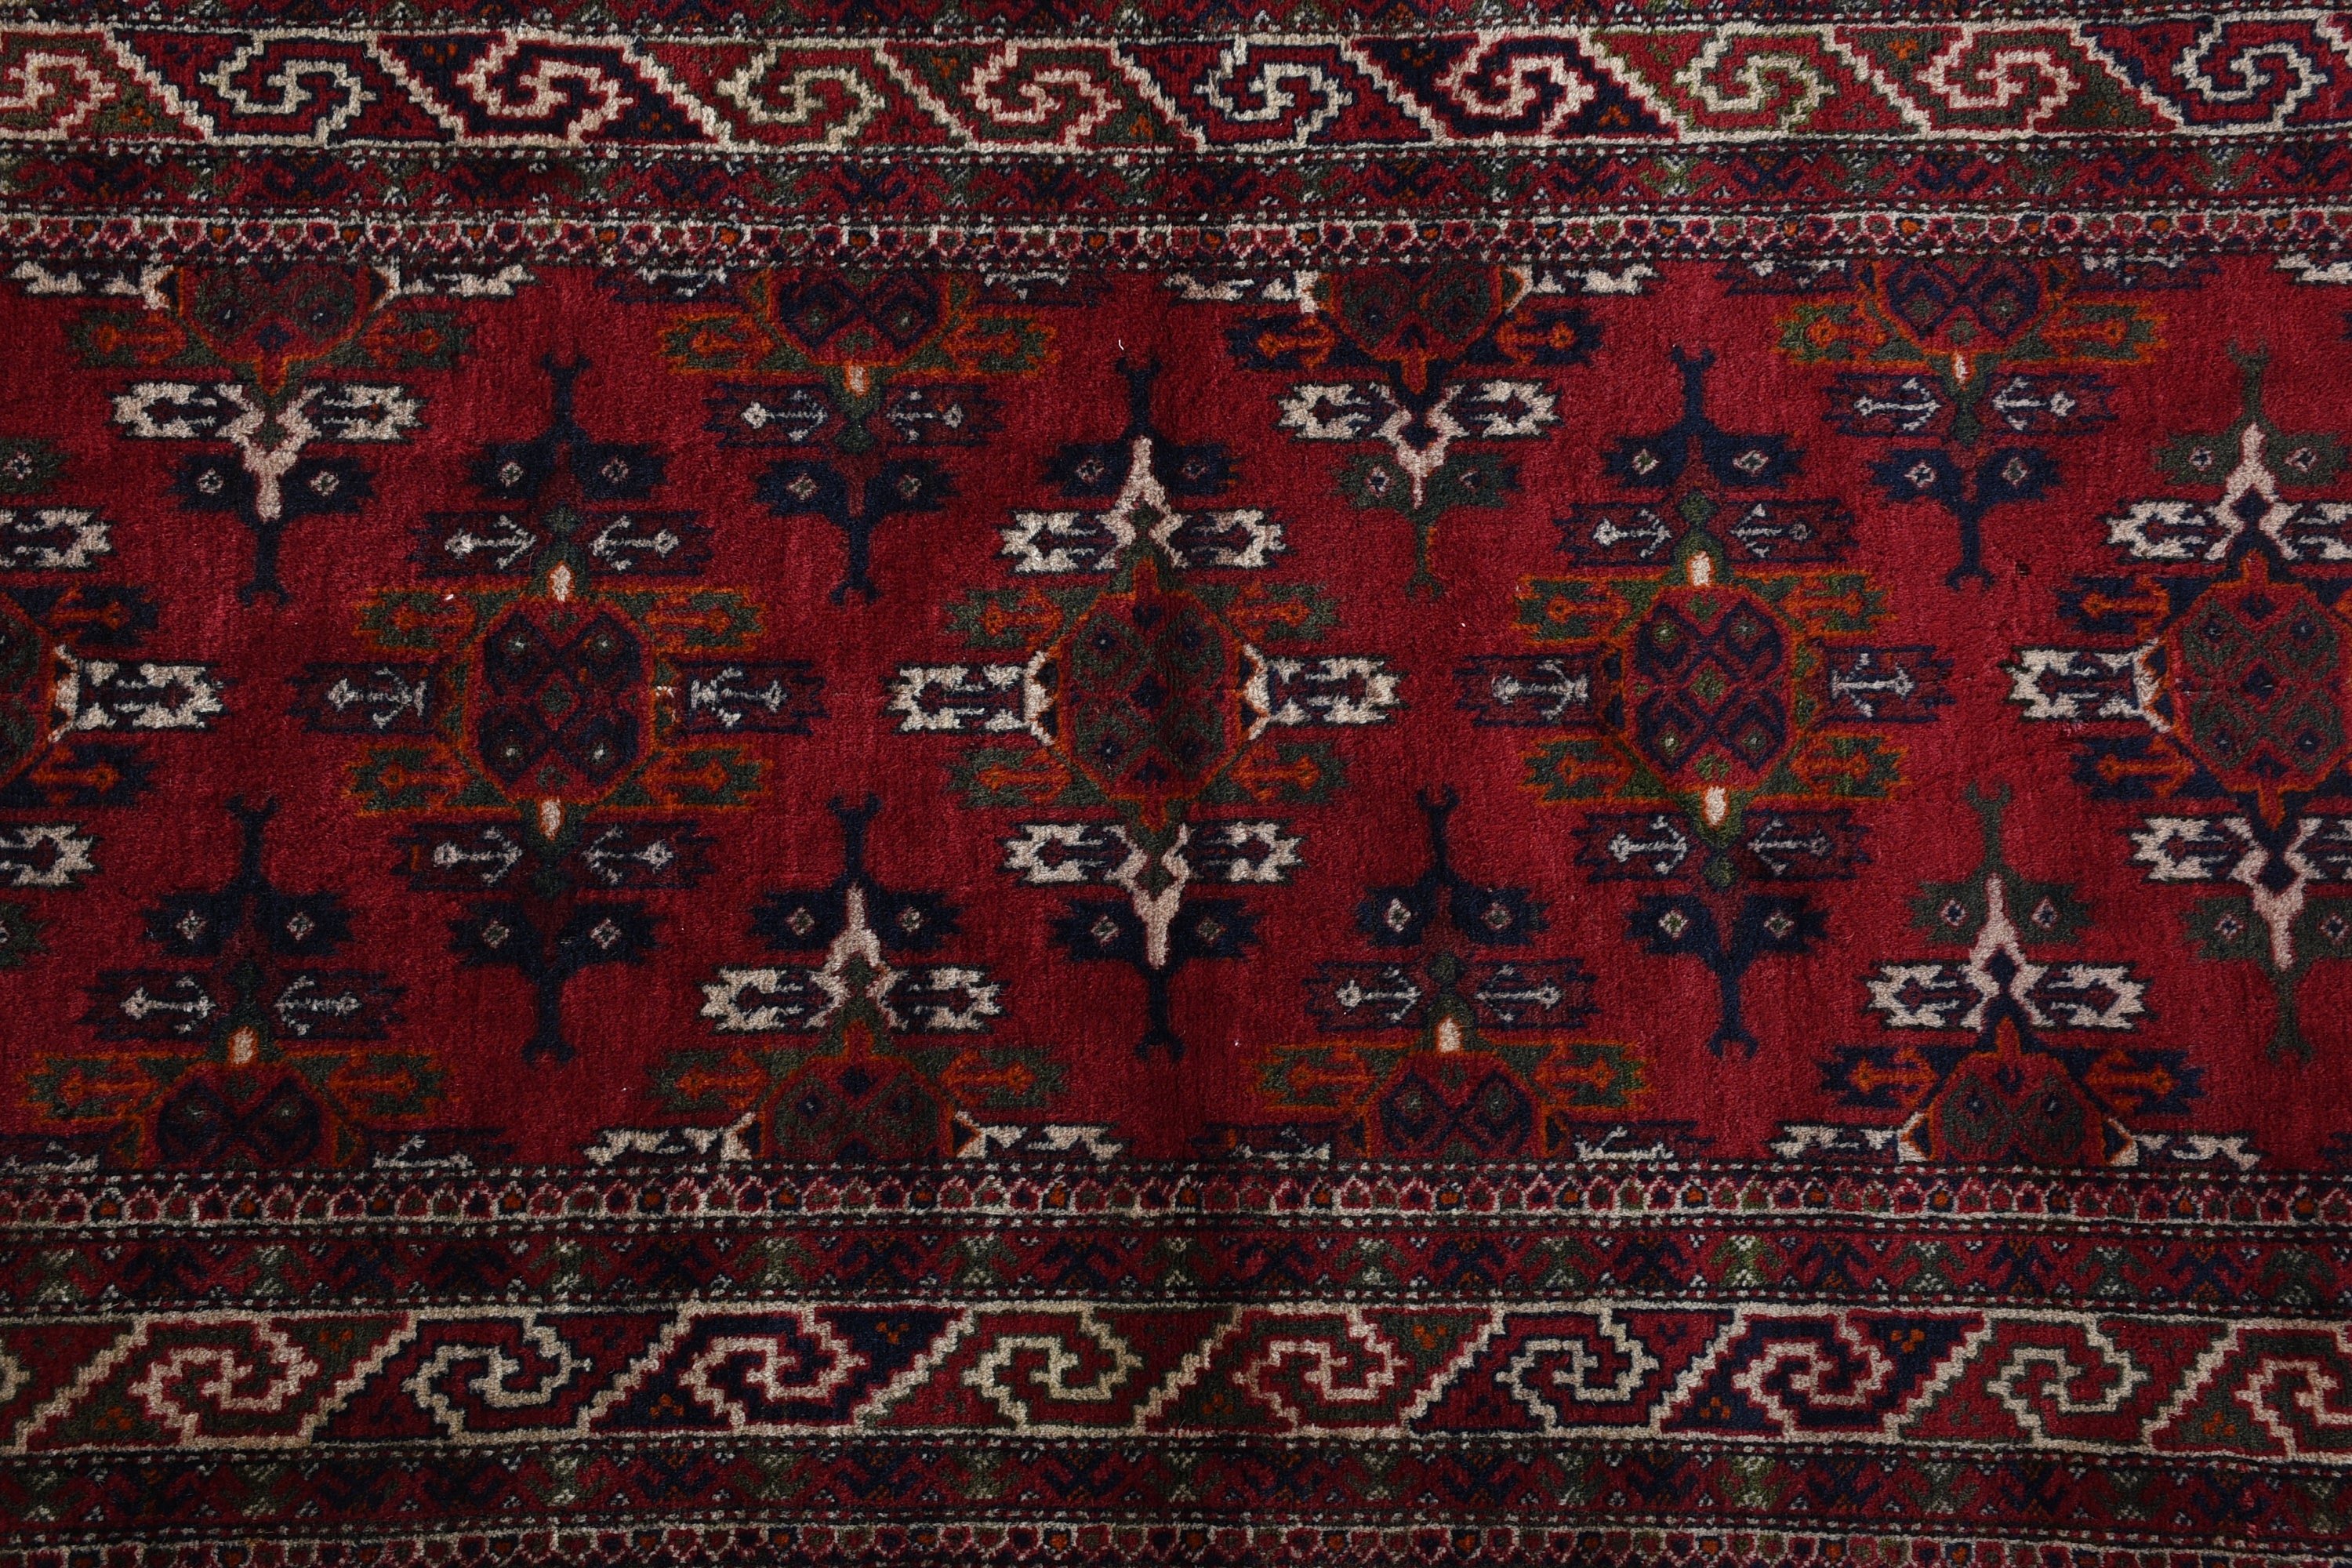 Office Rugs, Turkish Rugs, Hallway Rug, 2.6x11.2 ft Runner Rugs, Red Moroccan Rugs, Wool Rug, Vintage Rug, Rugs for Hallway